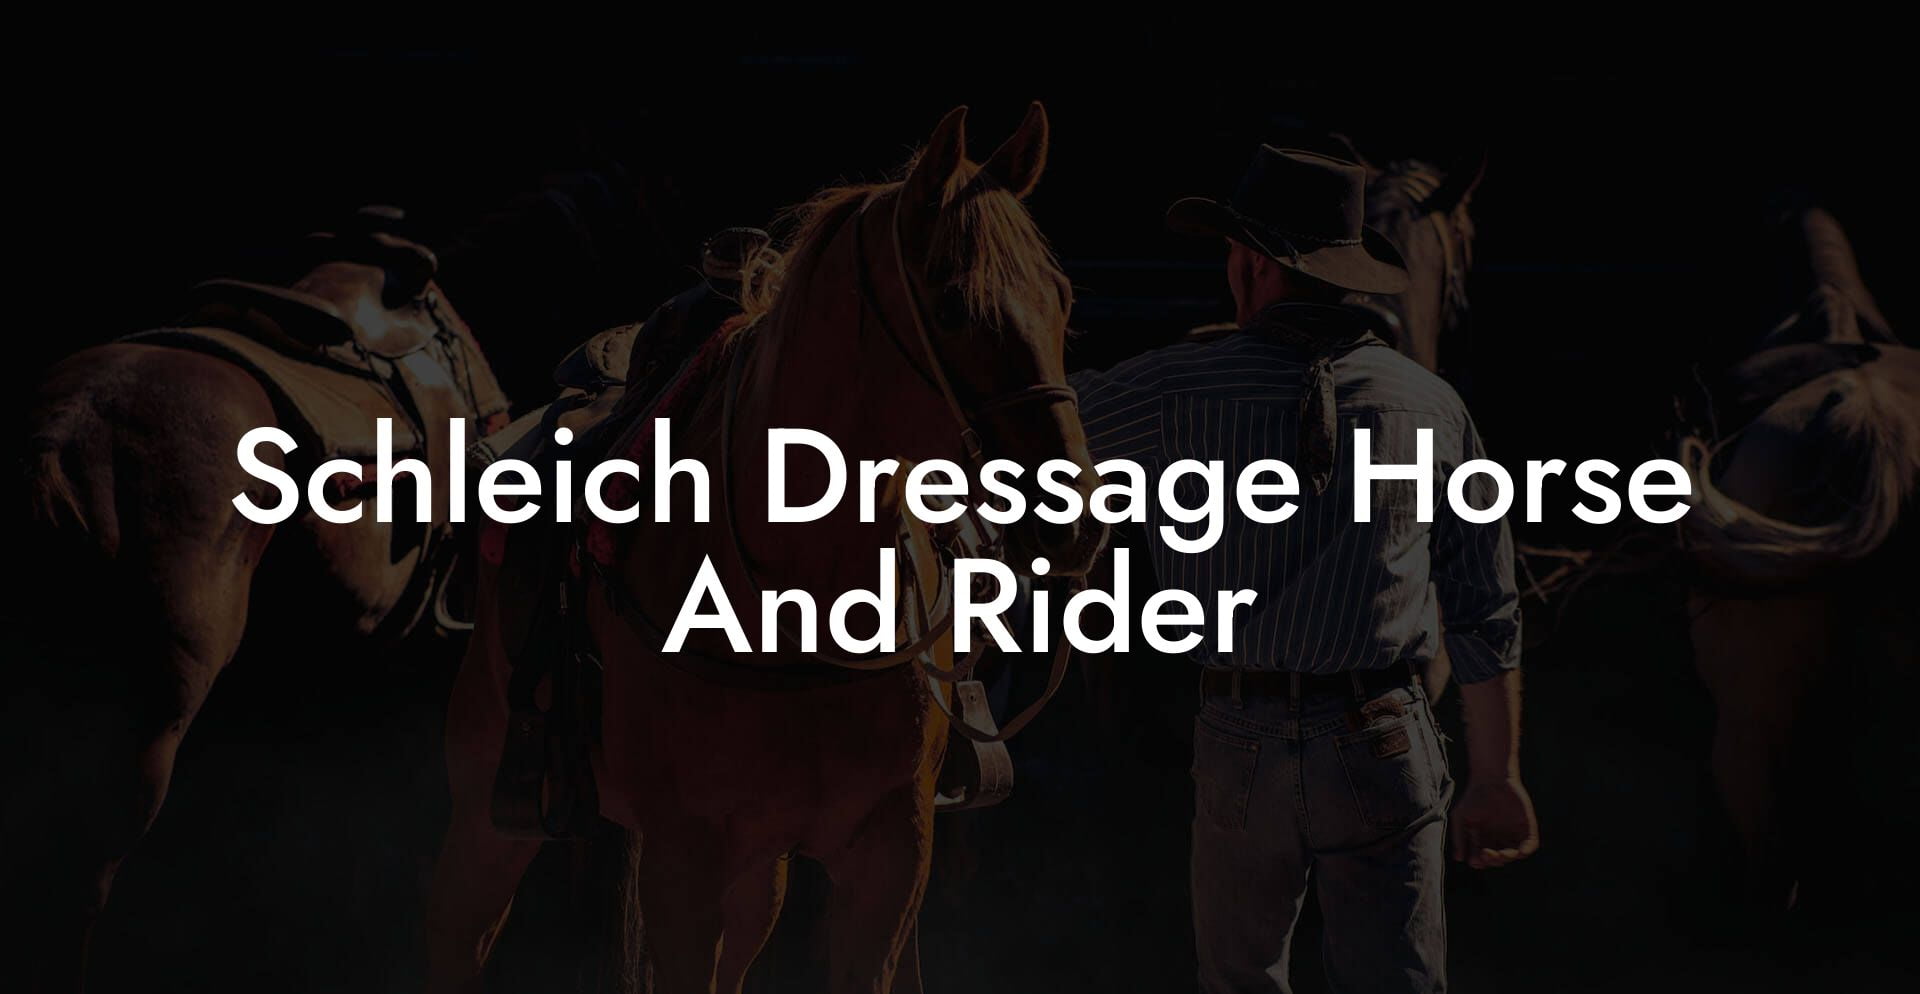 Schleich Dressage Horse And Rider